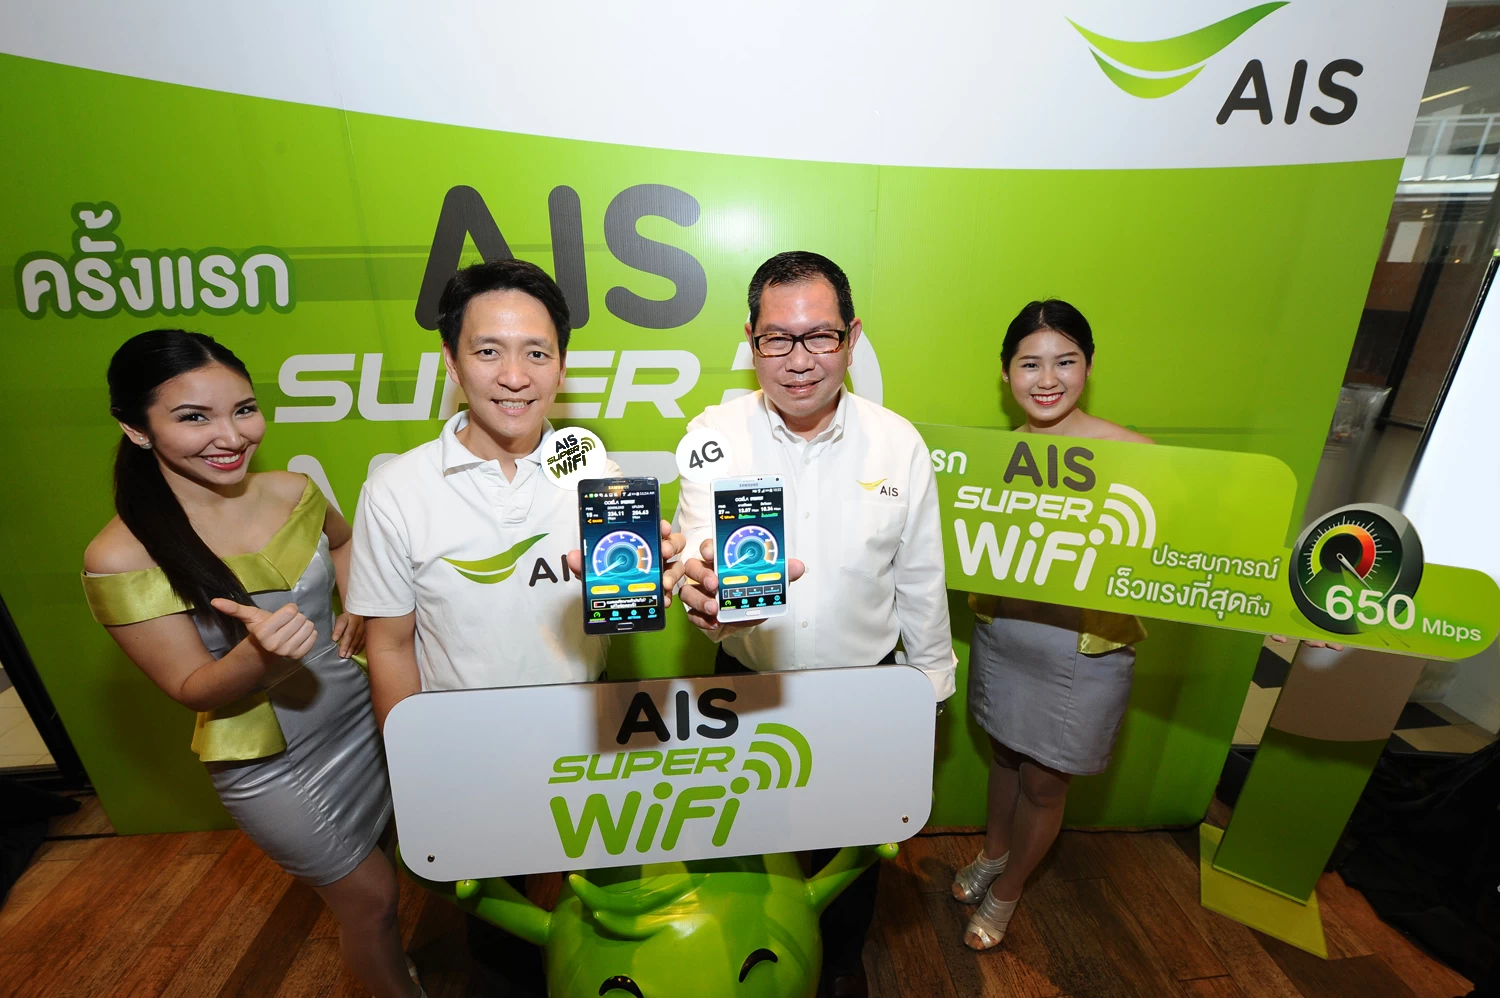 116 | AIS | AIS SUPER WiFi มาแล้ว! สปีดขั้นเทพ เร็ว แรง สูงสุด 650 Mbps ผู้ใช้ AIS ทุกคนทดสอบใช้ฟรีหนึ่งเดือน